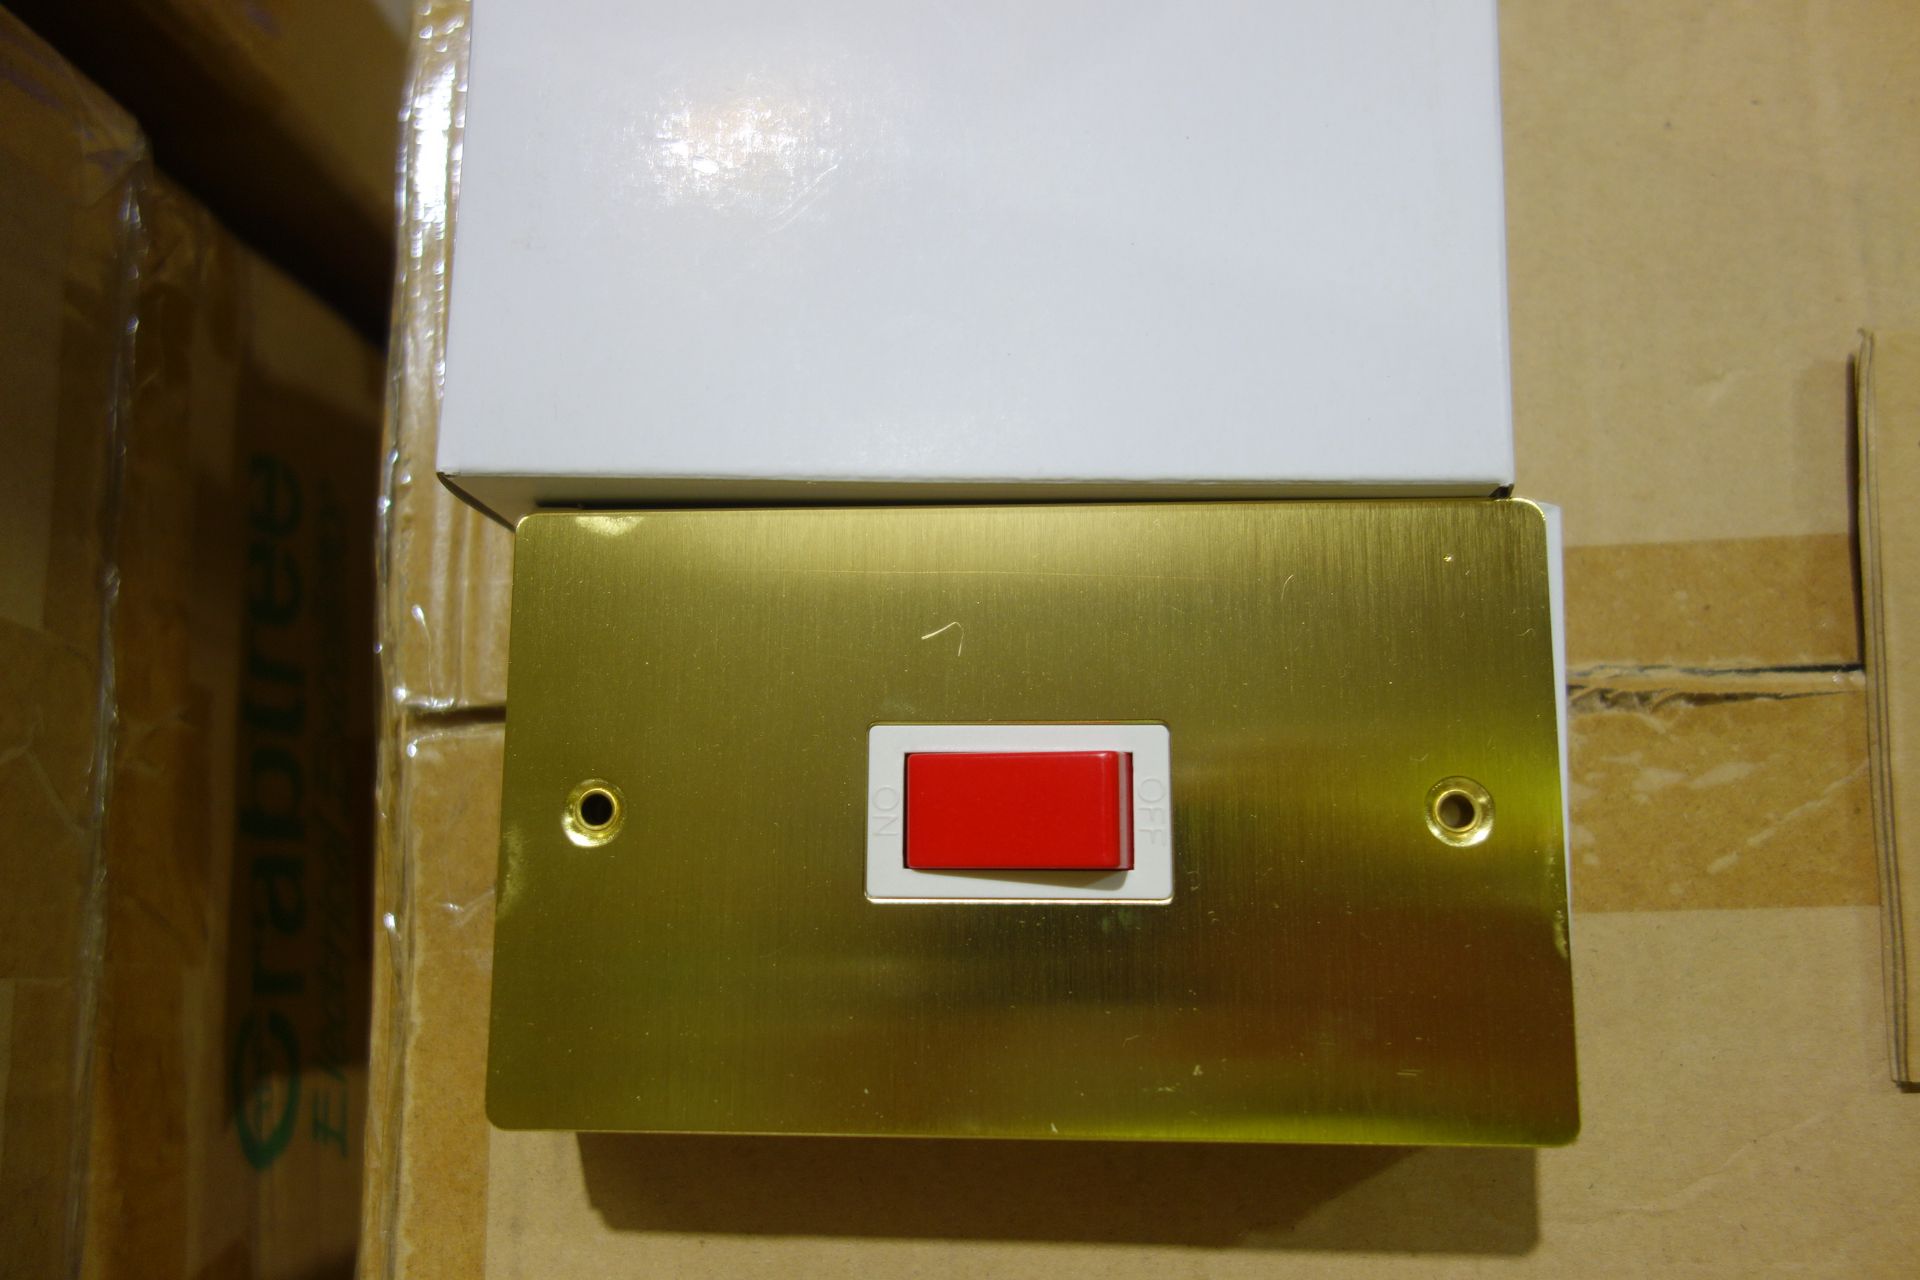 20 X Volex SF0018FBBWH 2G Vertical 45A Switch Red Rocker Brushed Brass White Inserts Flat Plate